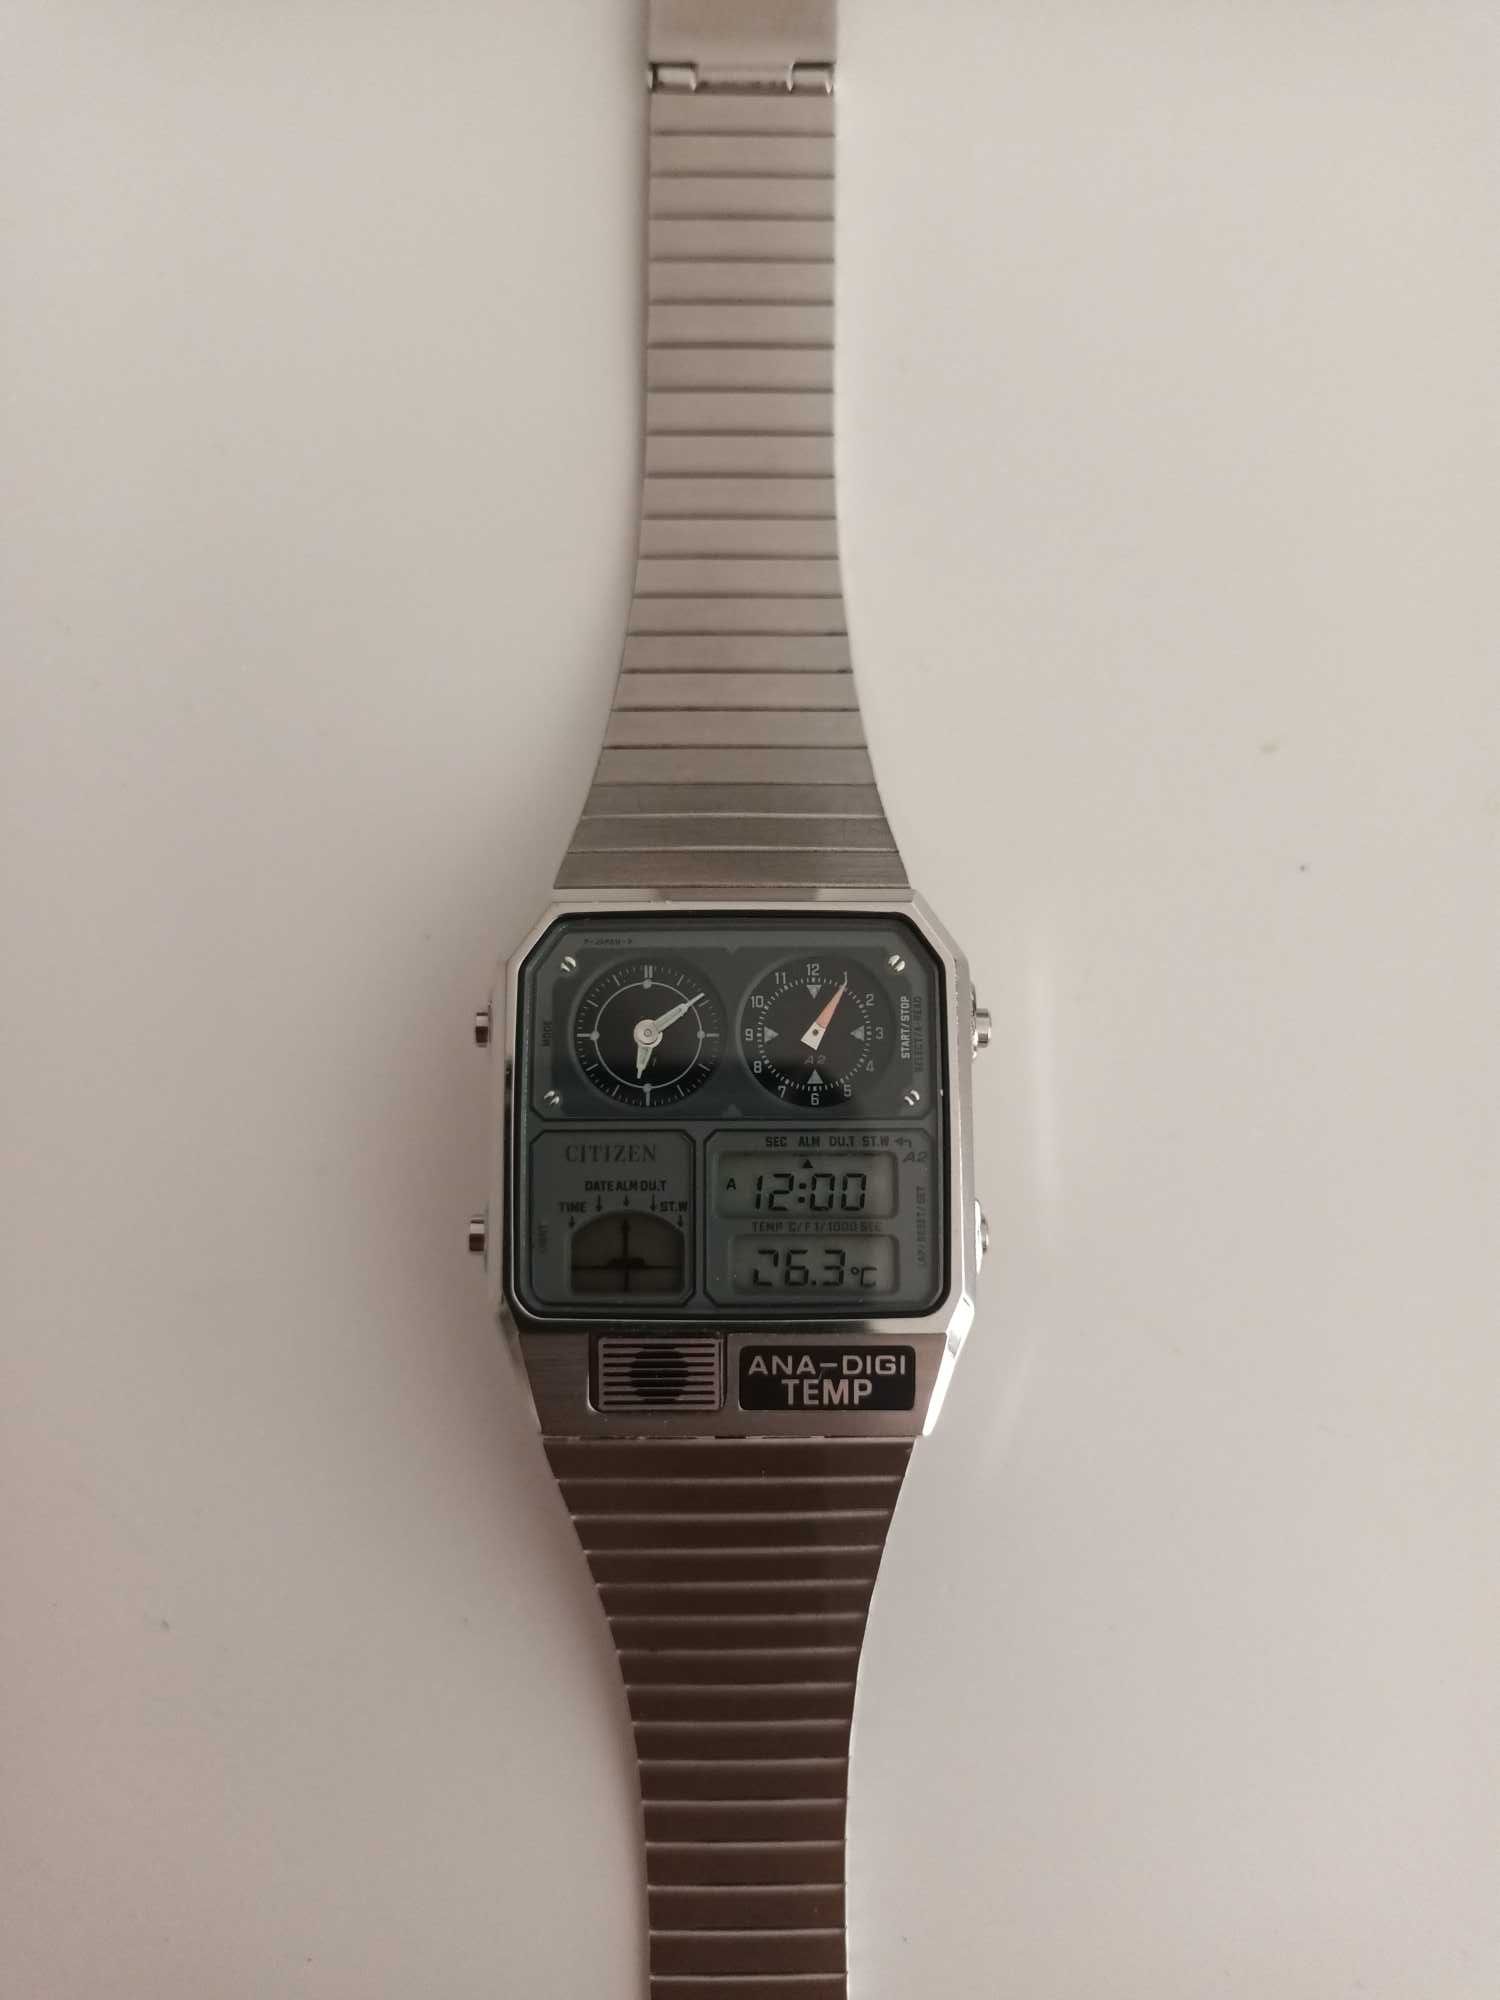 Relógio Citizen ANA-DIGI TEMP Vintage